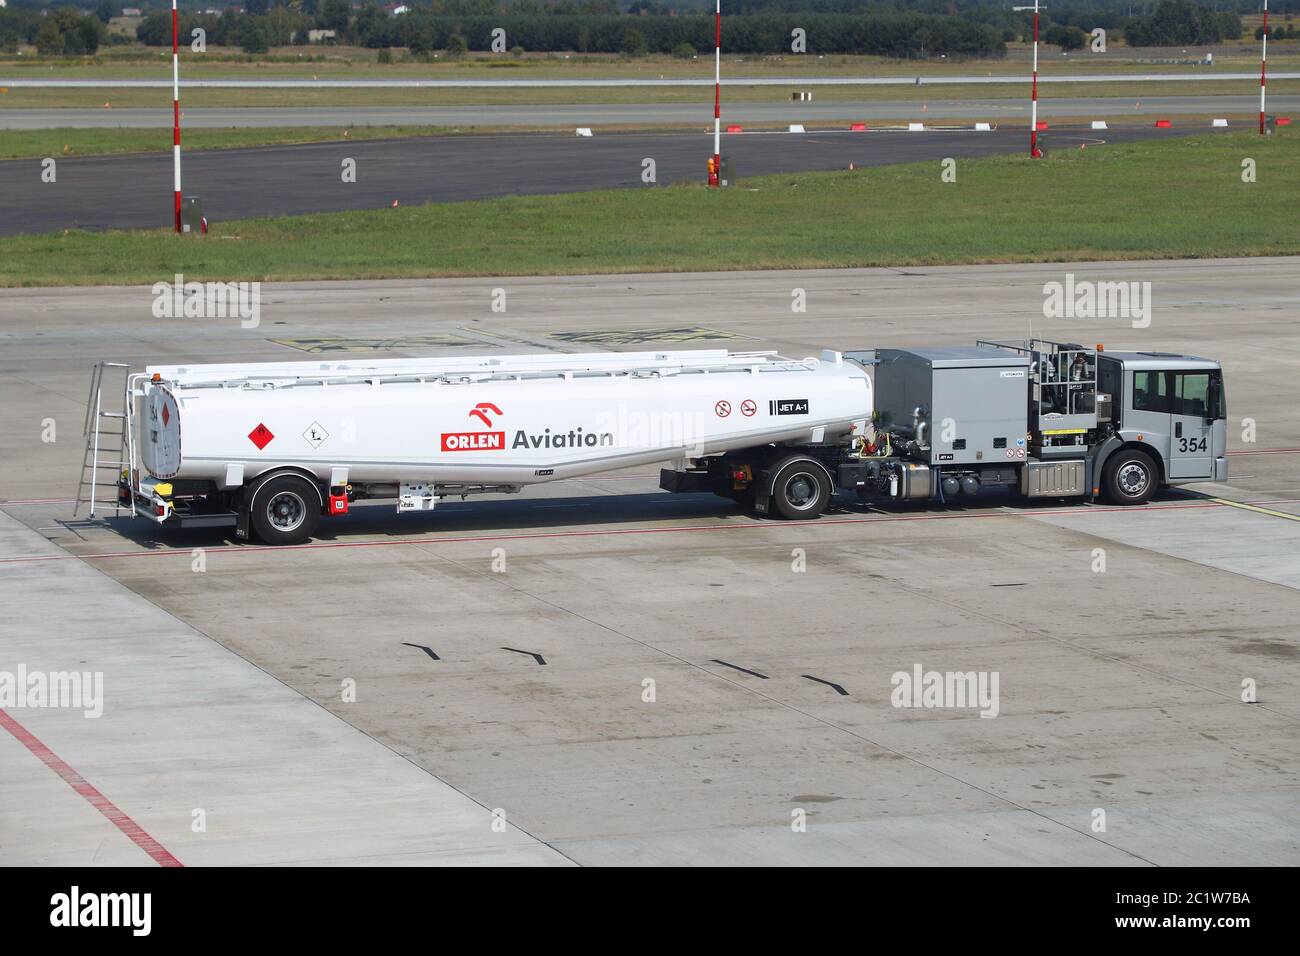 KATOWICE, POLONIA - 22 AGOSTO 2018: Camion a carburante di Orlen Aviation all'aeroporto di Katowice in Polonia. Orlen è la società nazionale del settore petrolifero in Polonia. Foto Stock